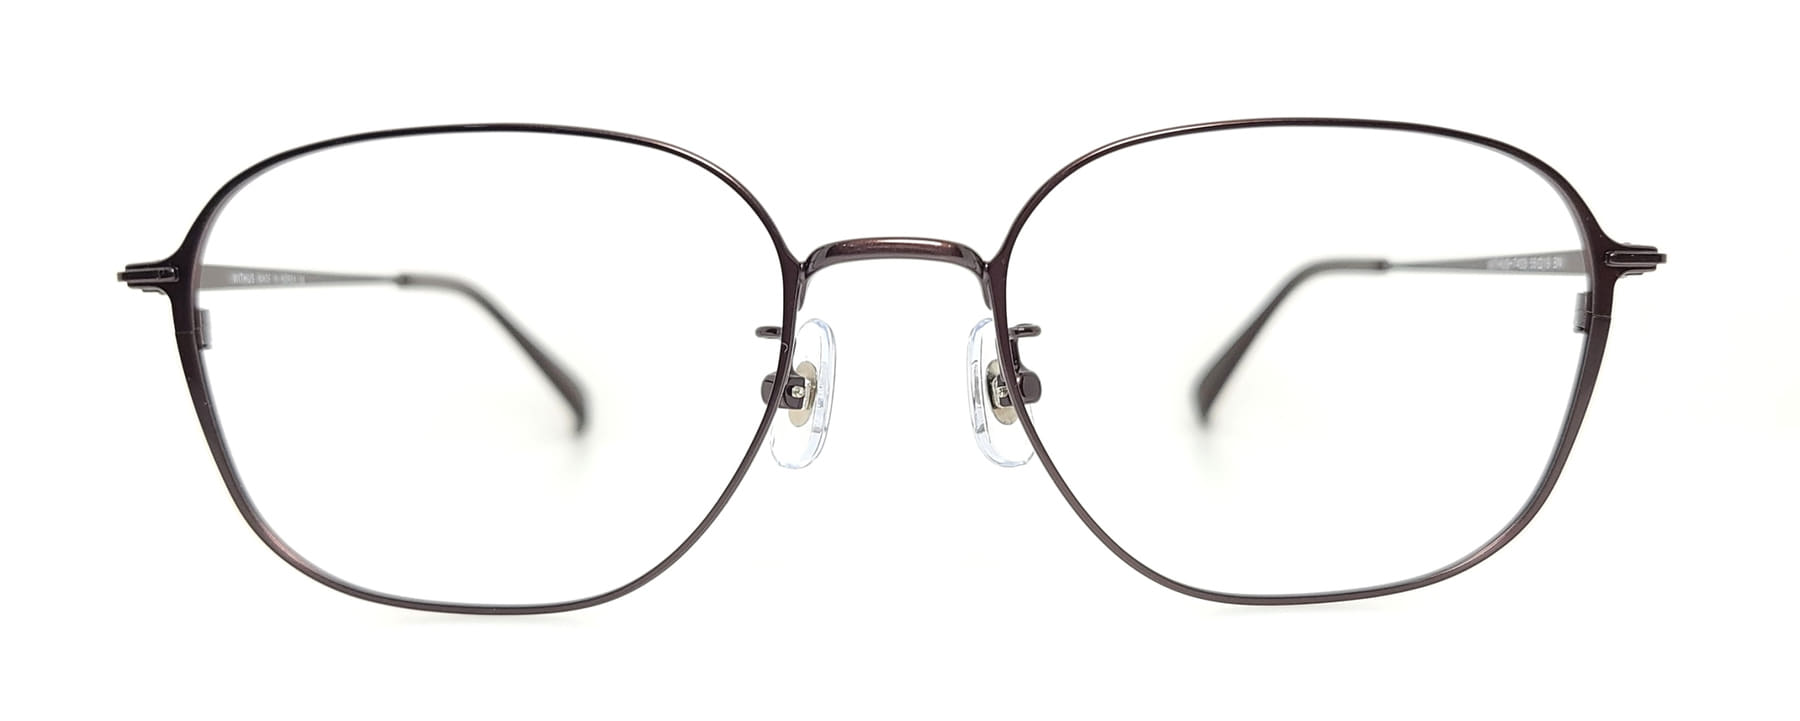 WITHUS-7433, Korean glasses, sunglasses, eyeglasses, glasses